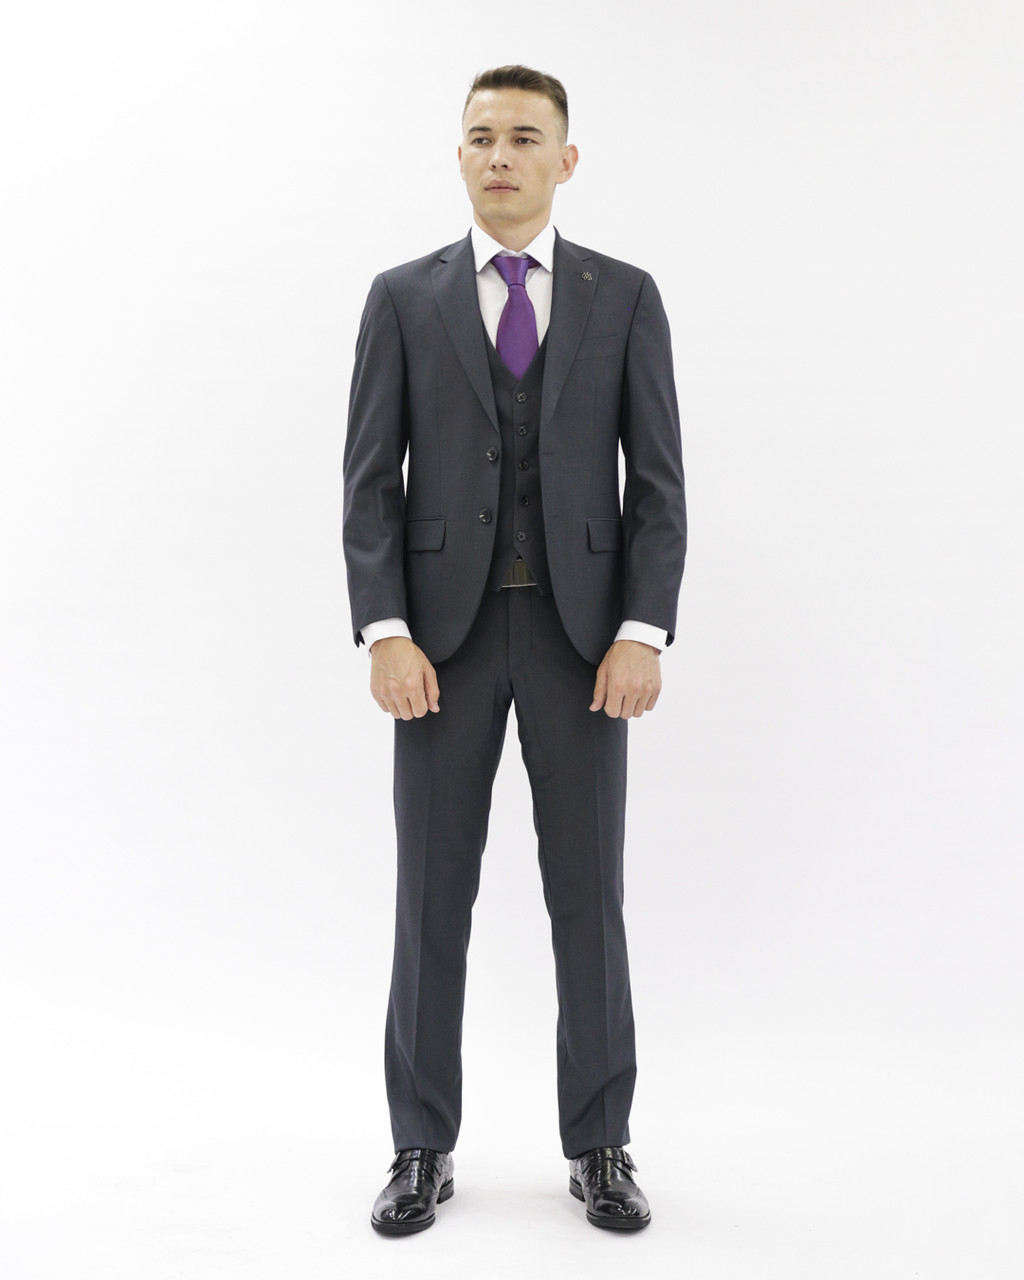 Мужской деловой костюм «UM&H 937502898» серый, фото 1